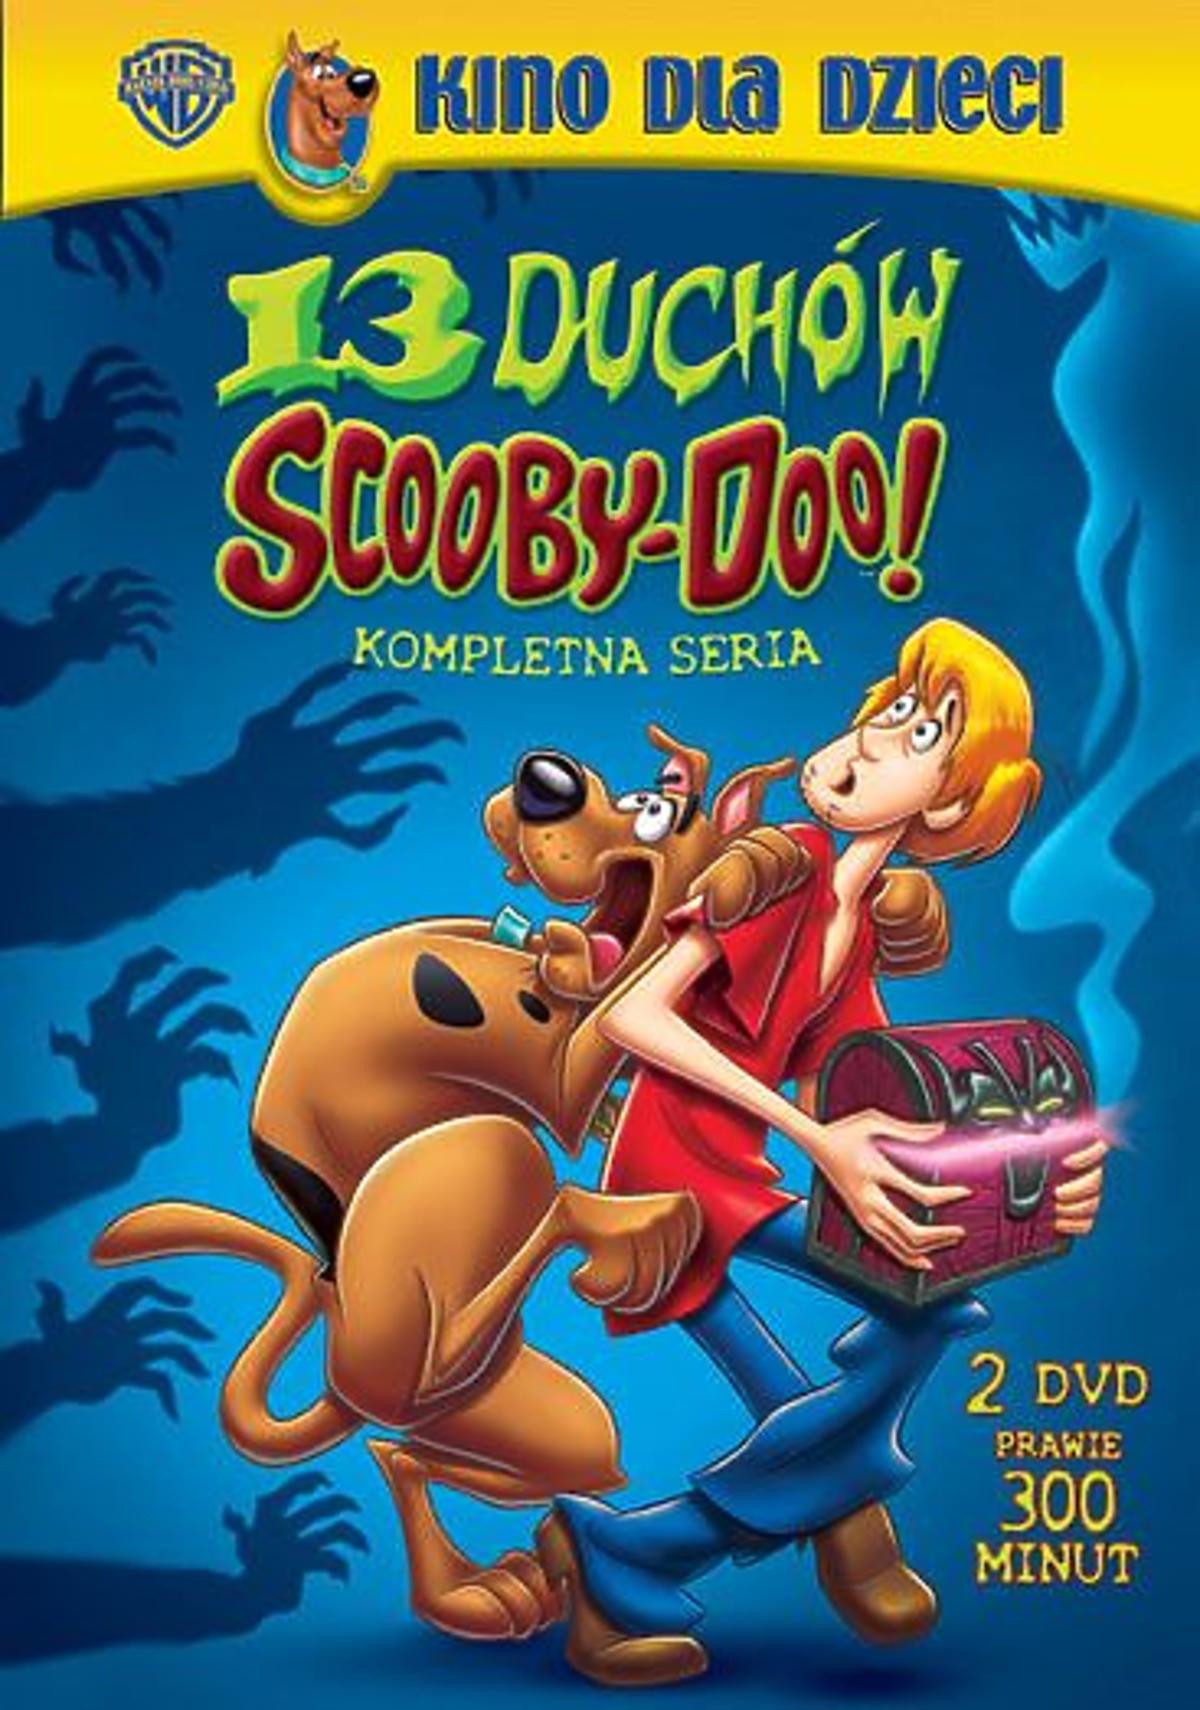 Scooby-Doo-13-Duchow_DVD-2d.jpg